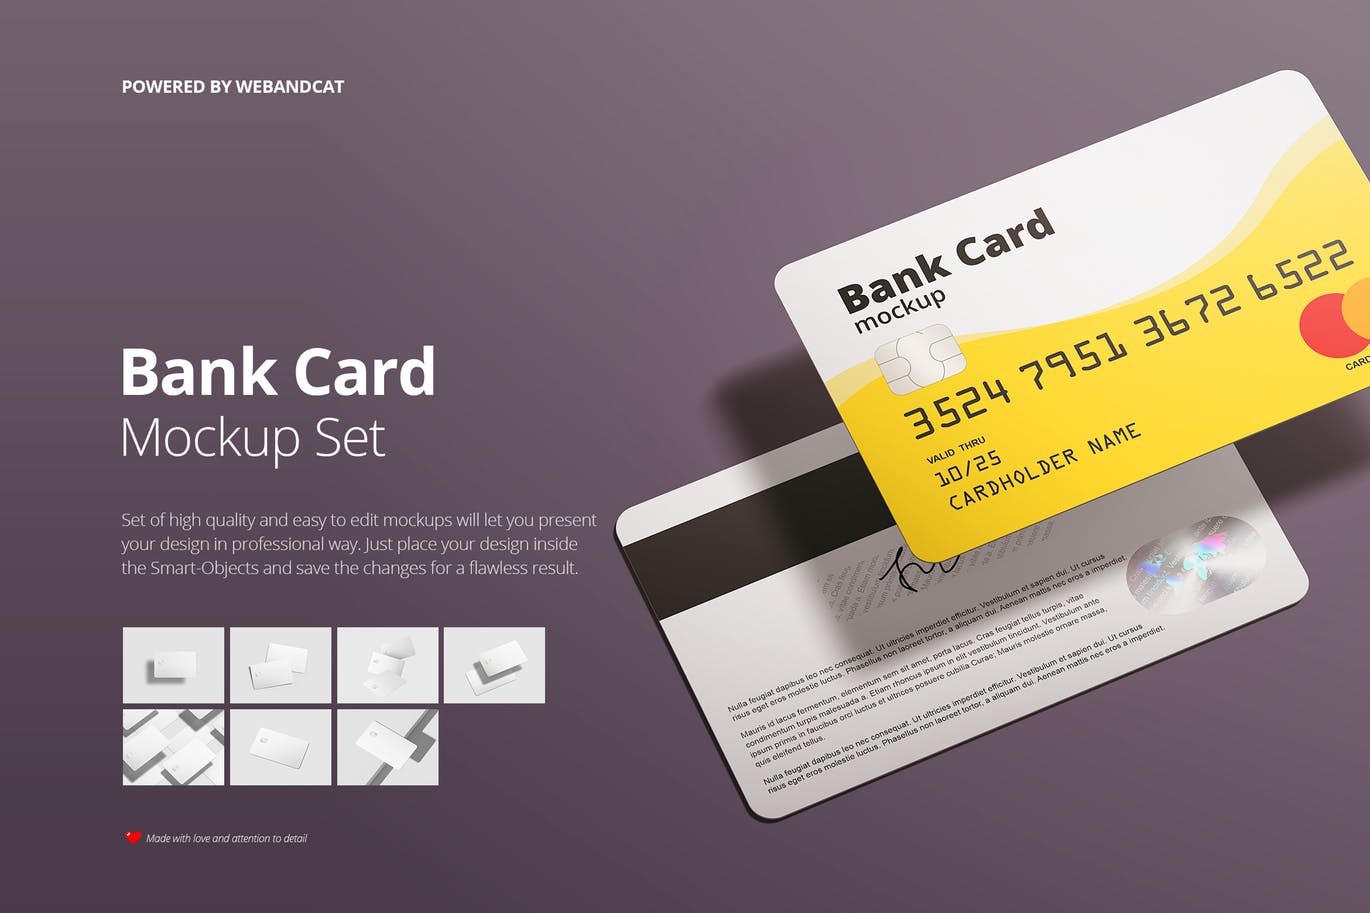 银行卡/会员卡版面设计效果图16设计网精选模板 Bank / Membership Card Mockup插图